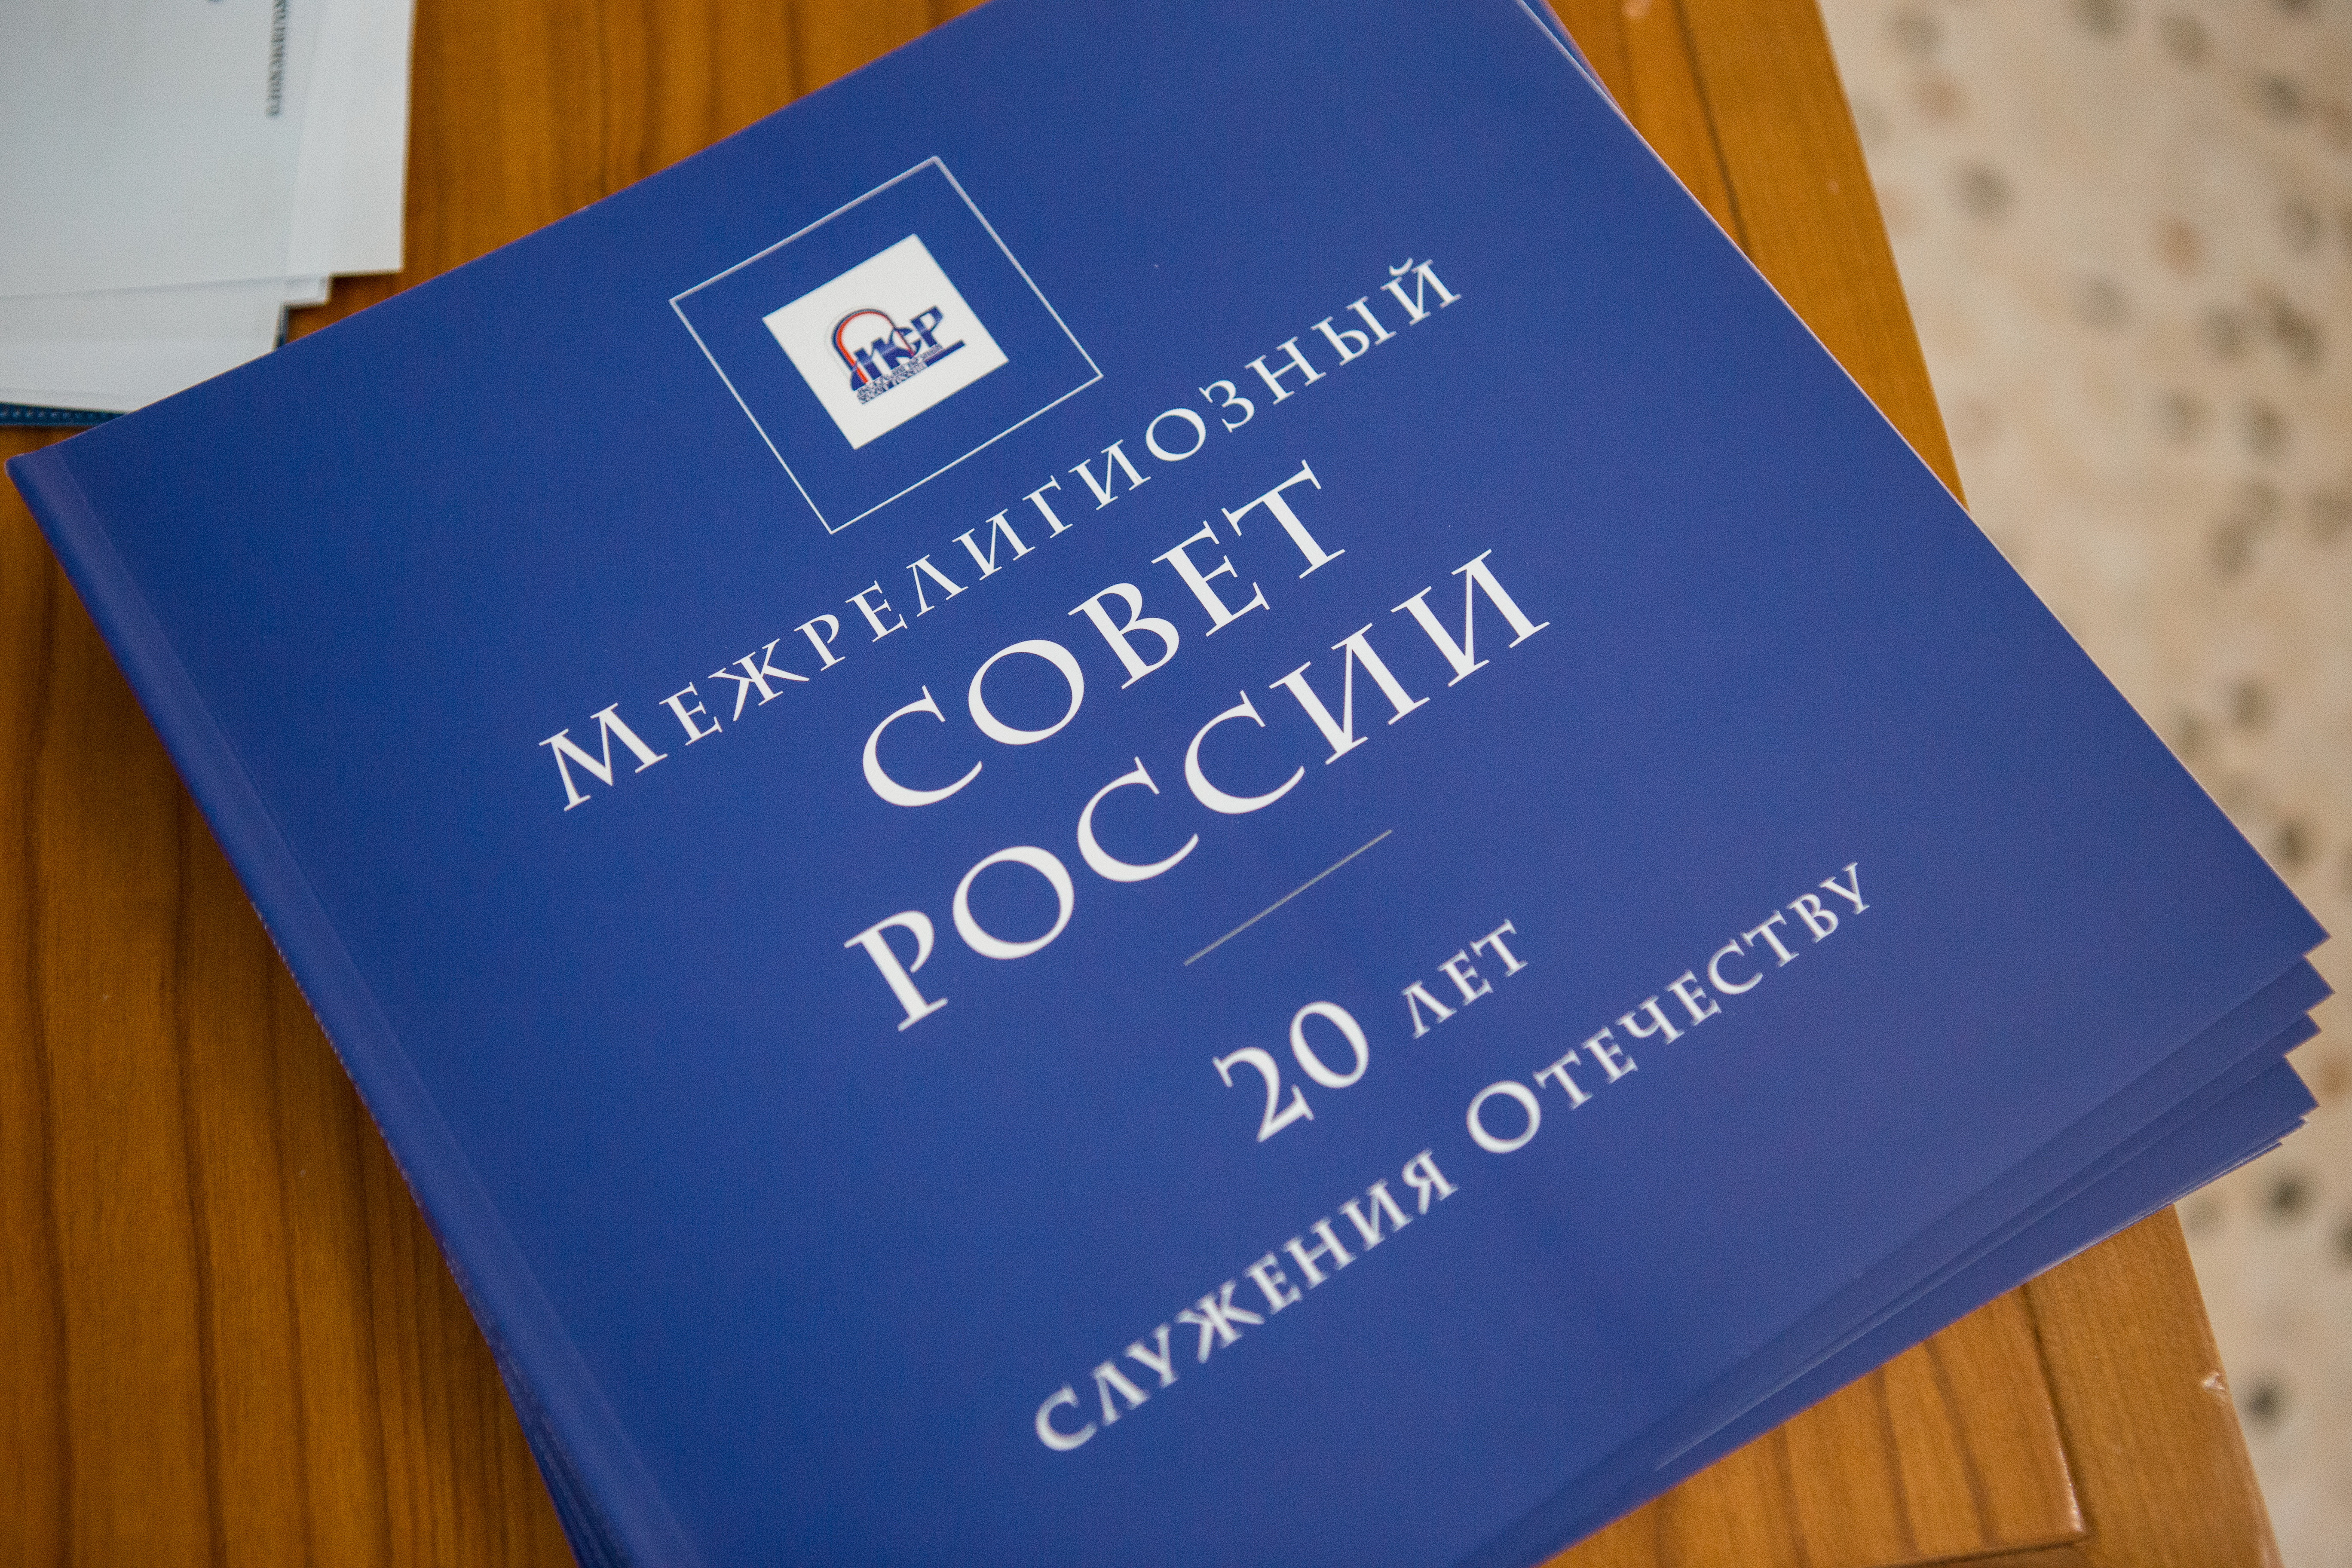 Межрелигиозный совет России выпустил заявление  о недопустимости государственной регистрации в качестве товарных знаков обозначений, воспроизводящих религиозные символы